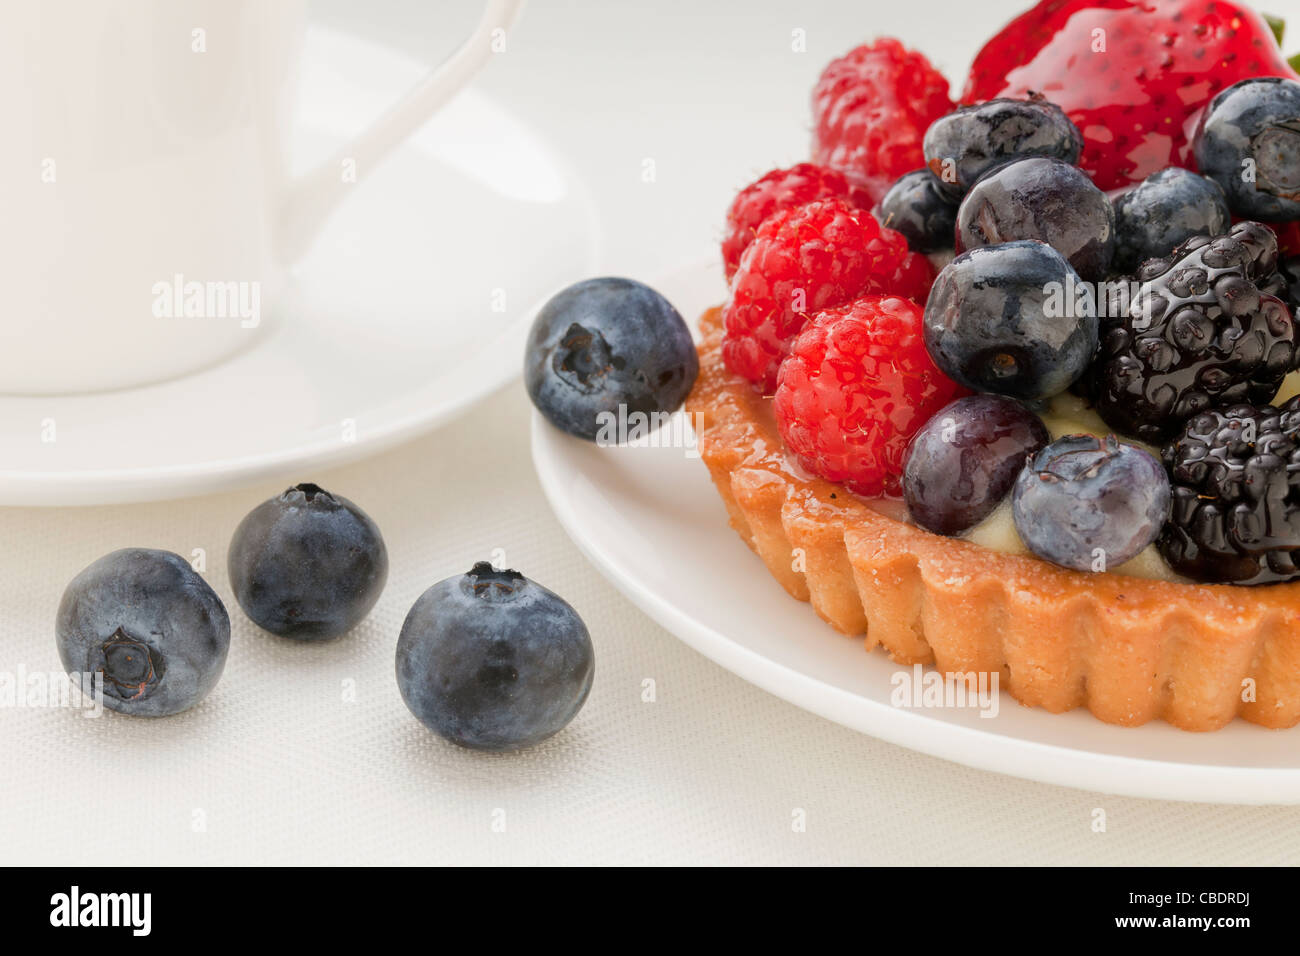 Crostata di frutta con mirtillo, mora, lampone e fragola, una tazza di caffè in background Foto Stock